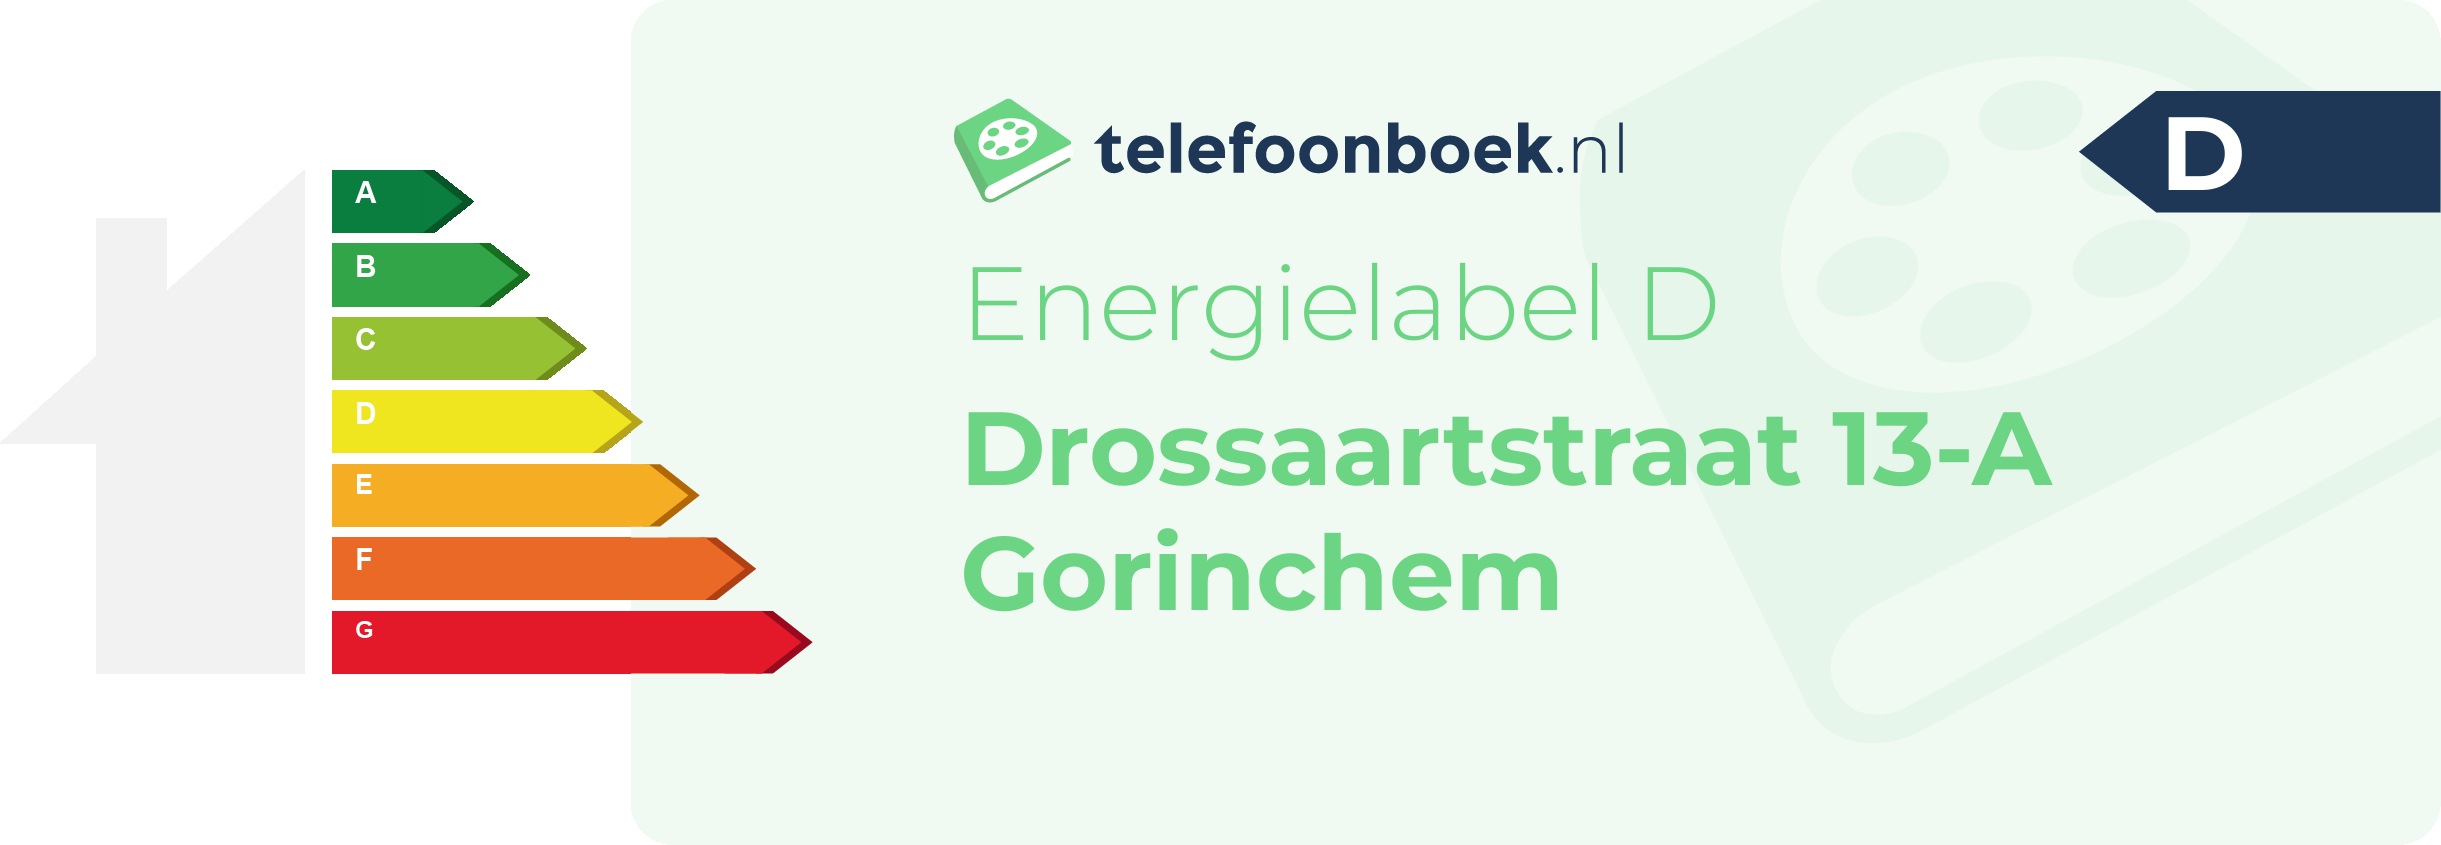 Energielabel Drossaartstraat 13-A Gorinchem